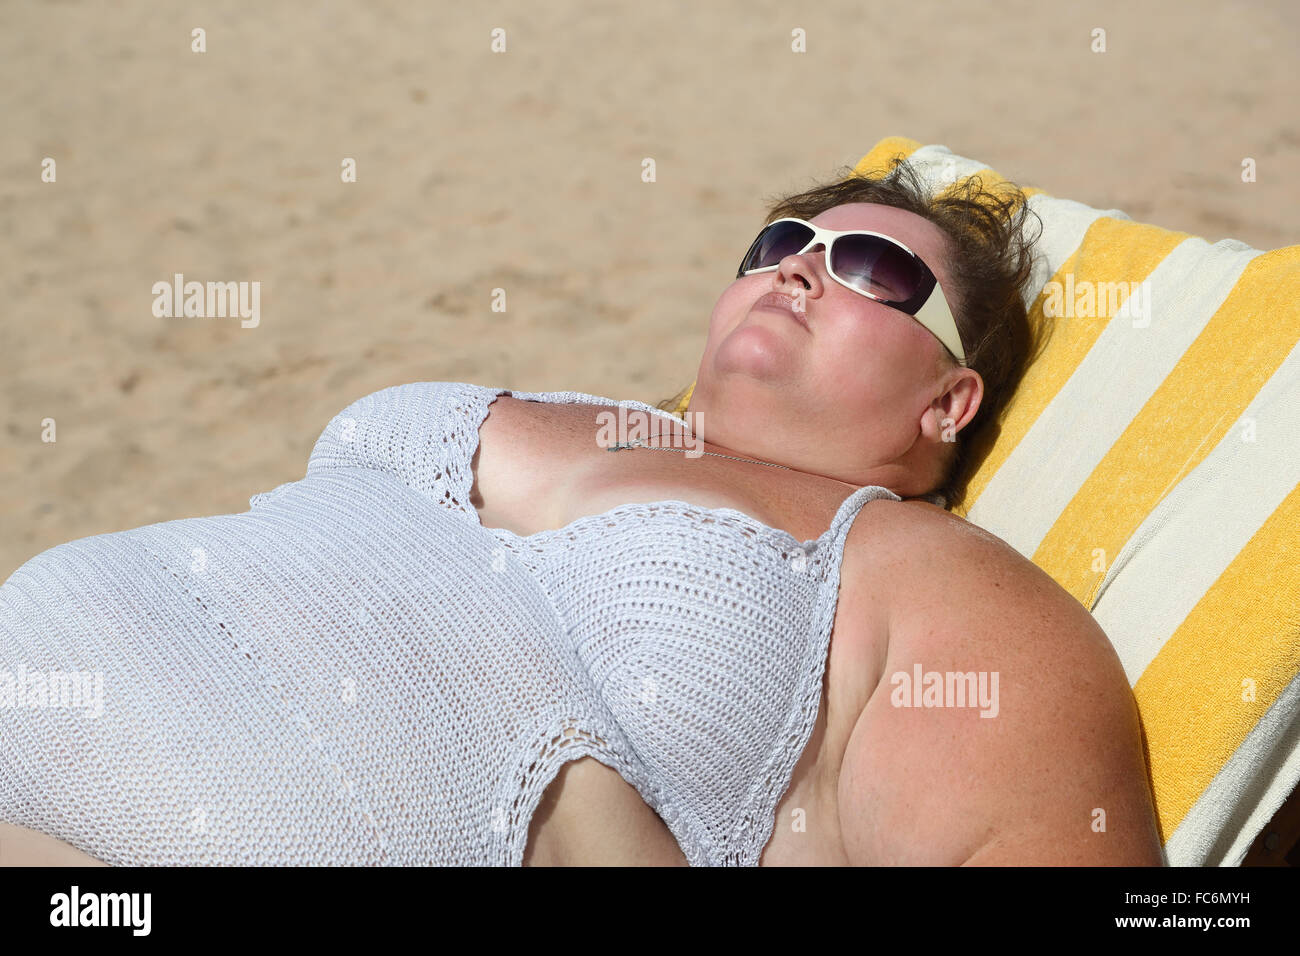 Под толстухой. Толстая женщина на пляже. Толстая женщина на Аляжу. Толстая женщина загорает. Толстая женщина лежит на пляже.